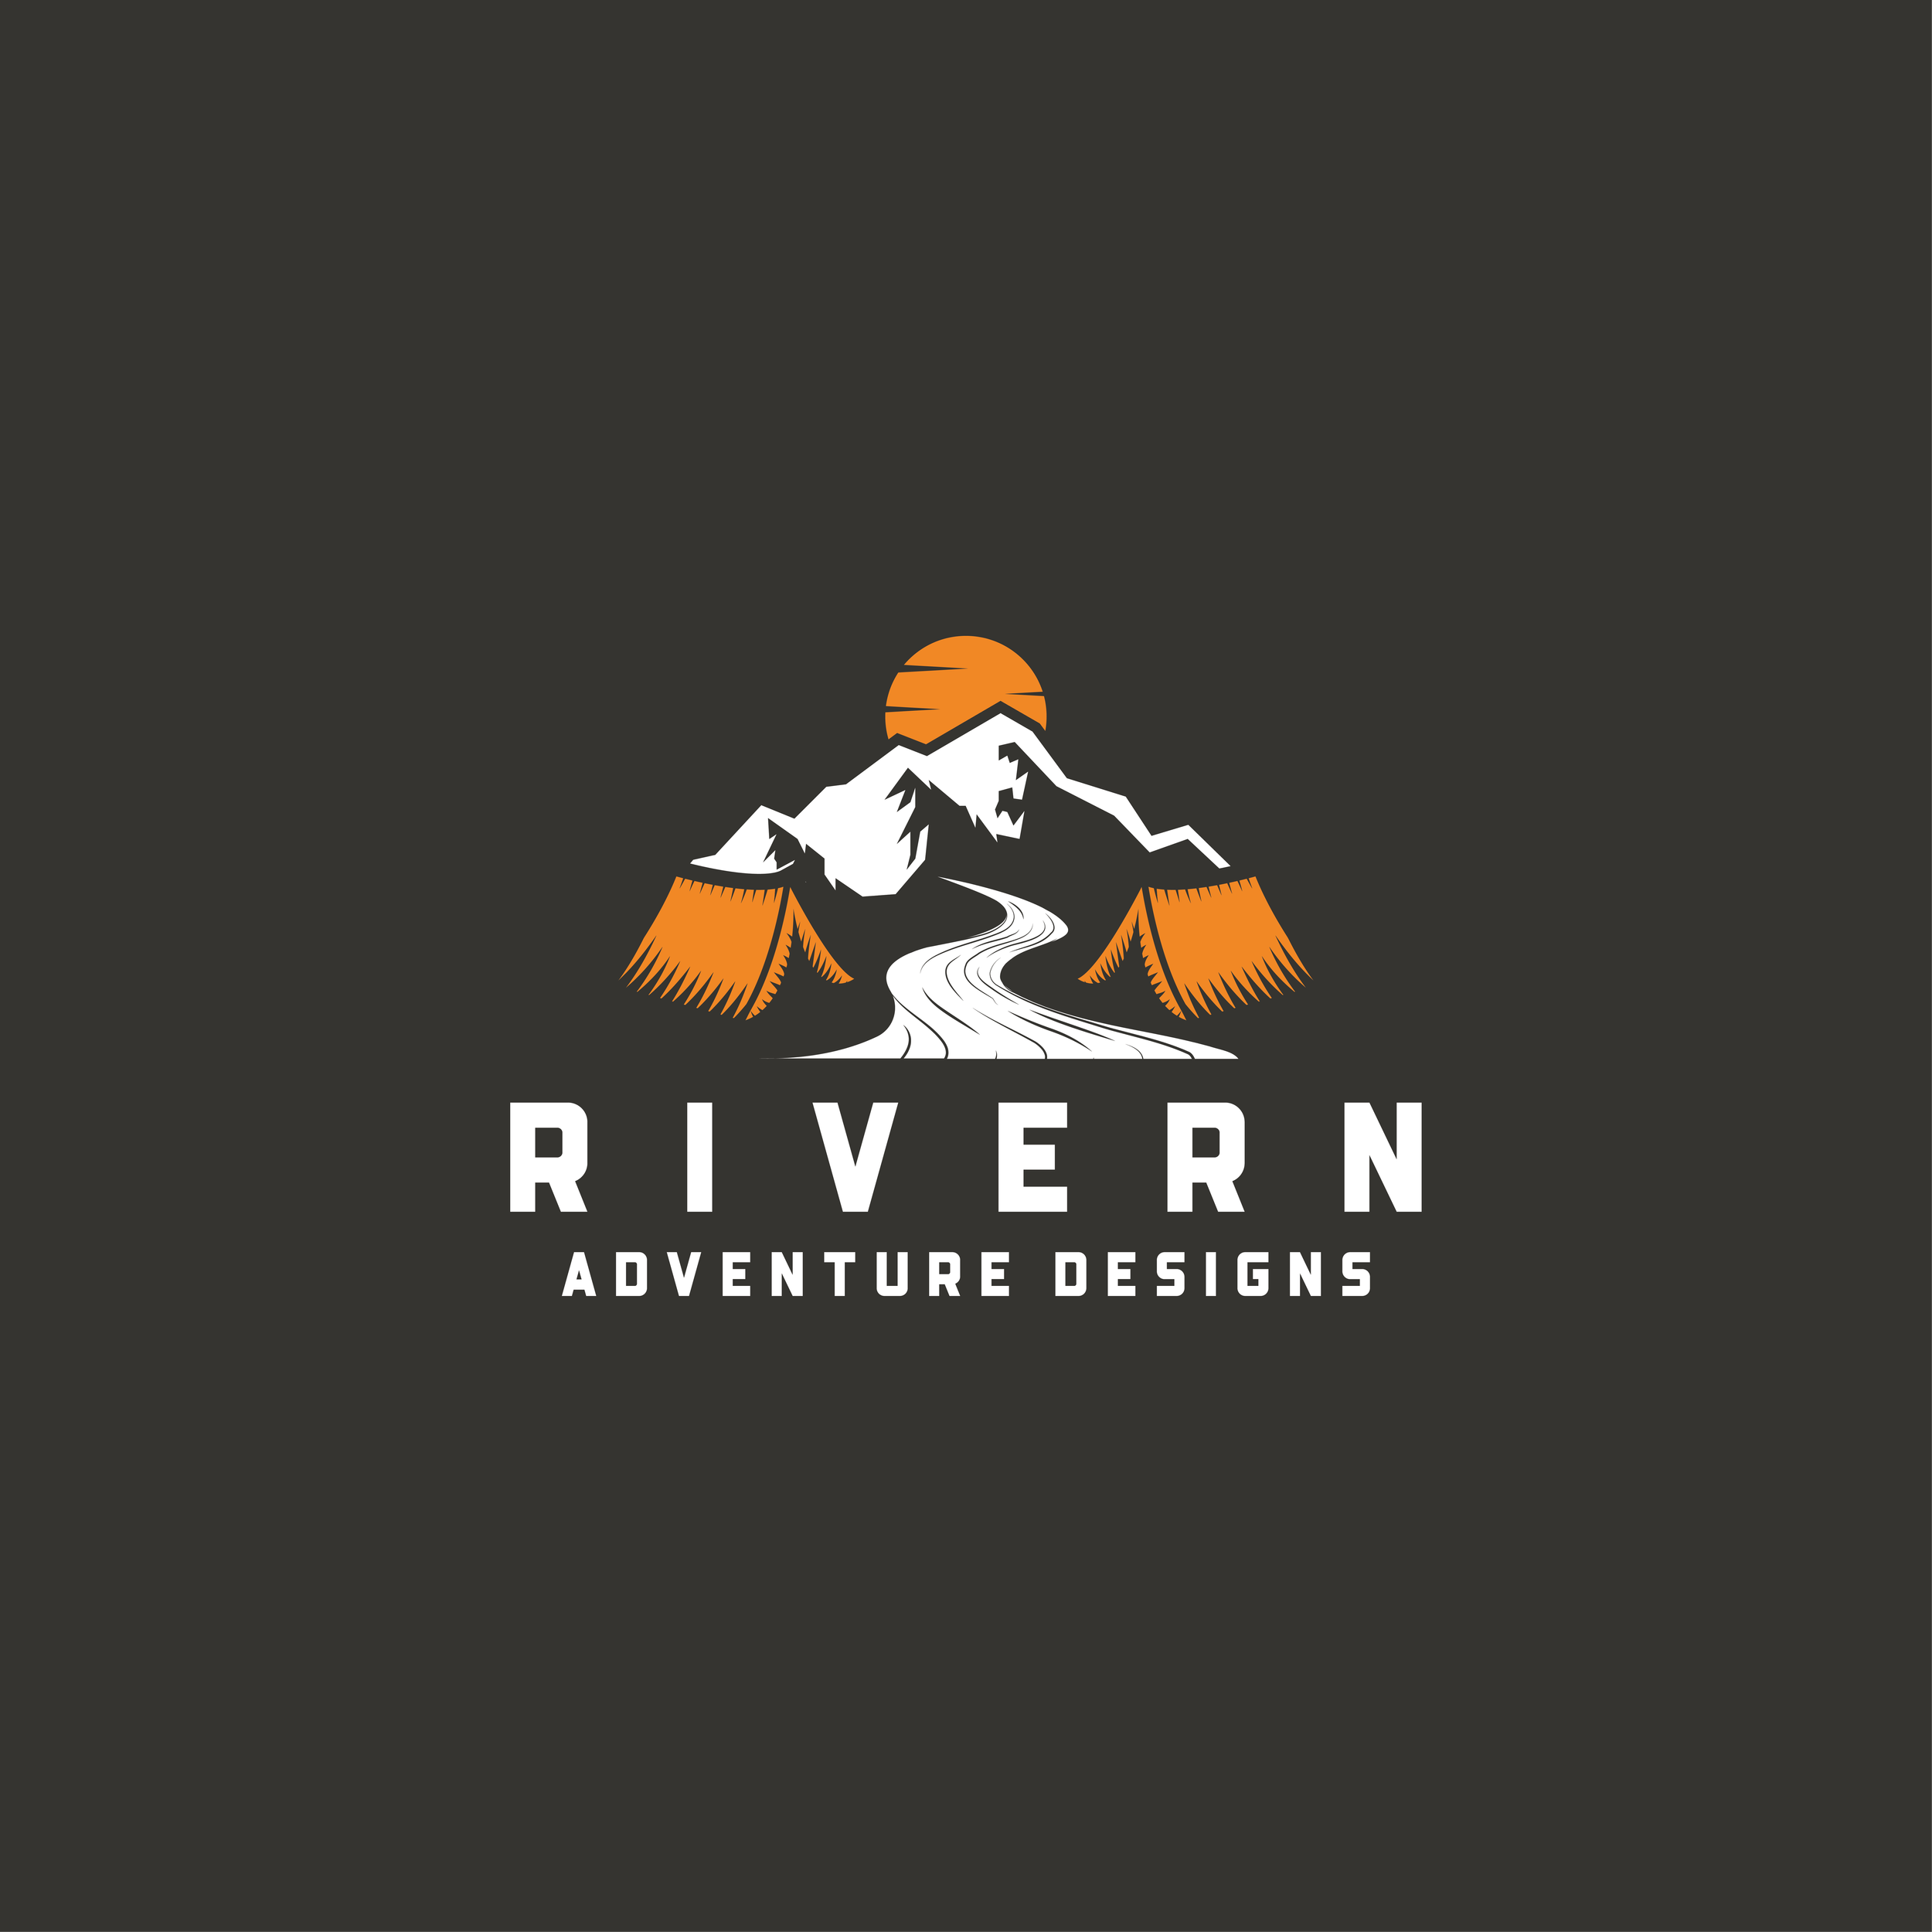 Rivern final logo print.png